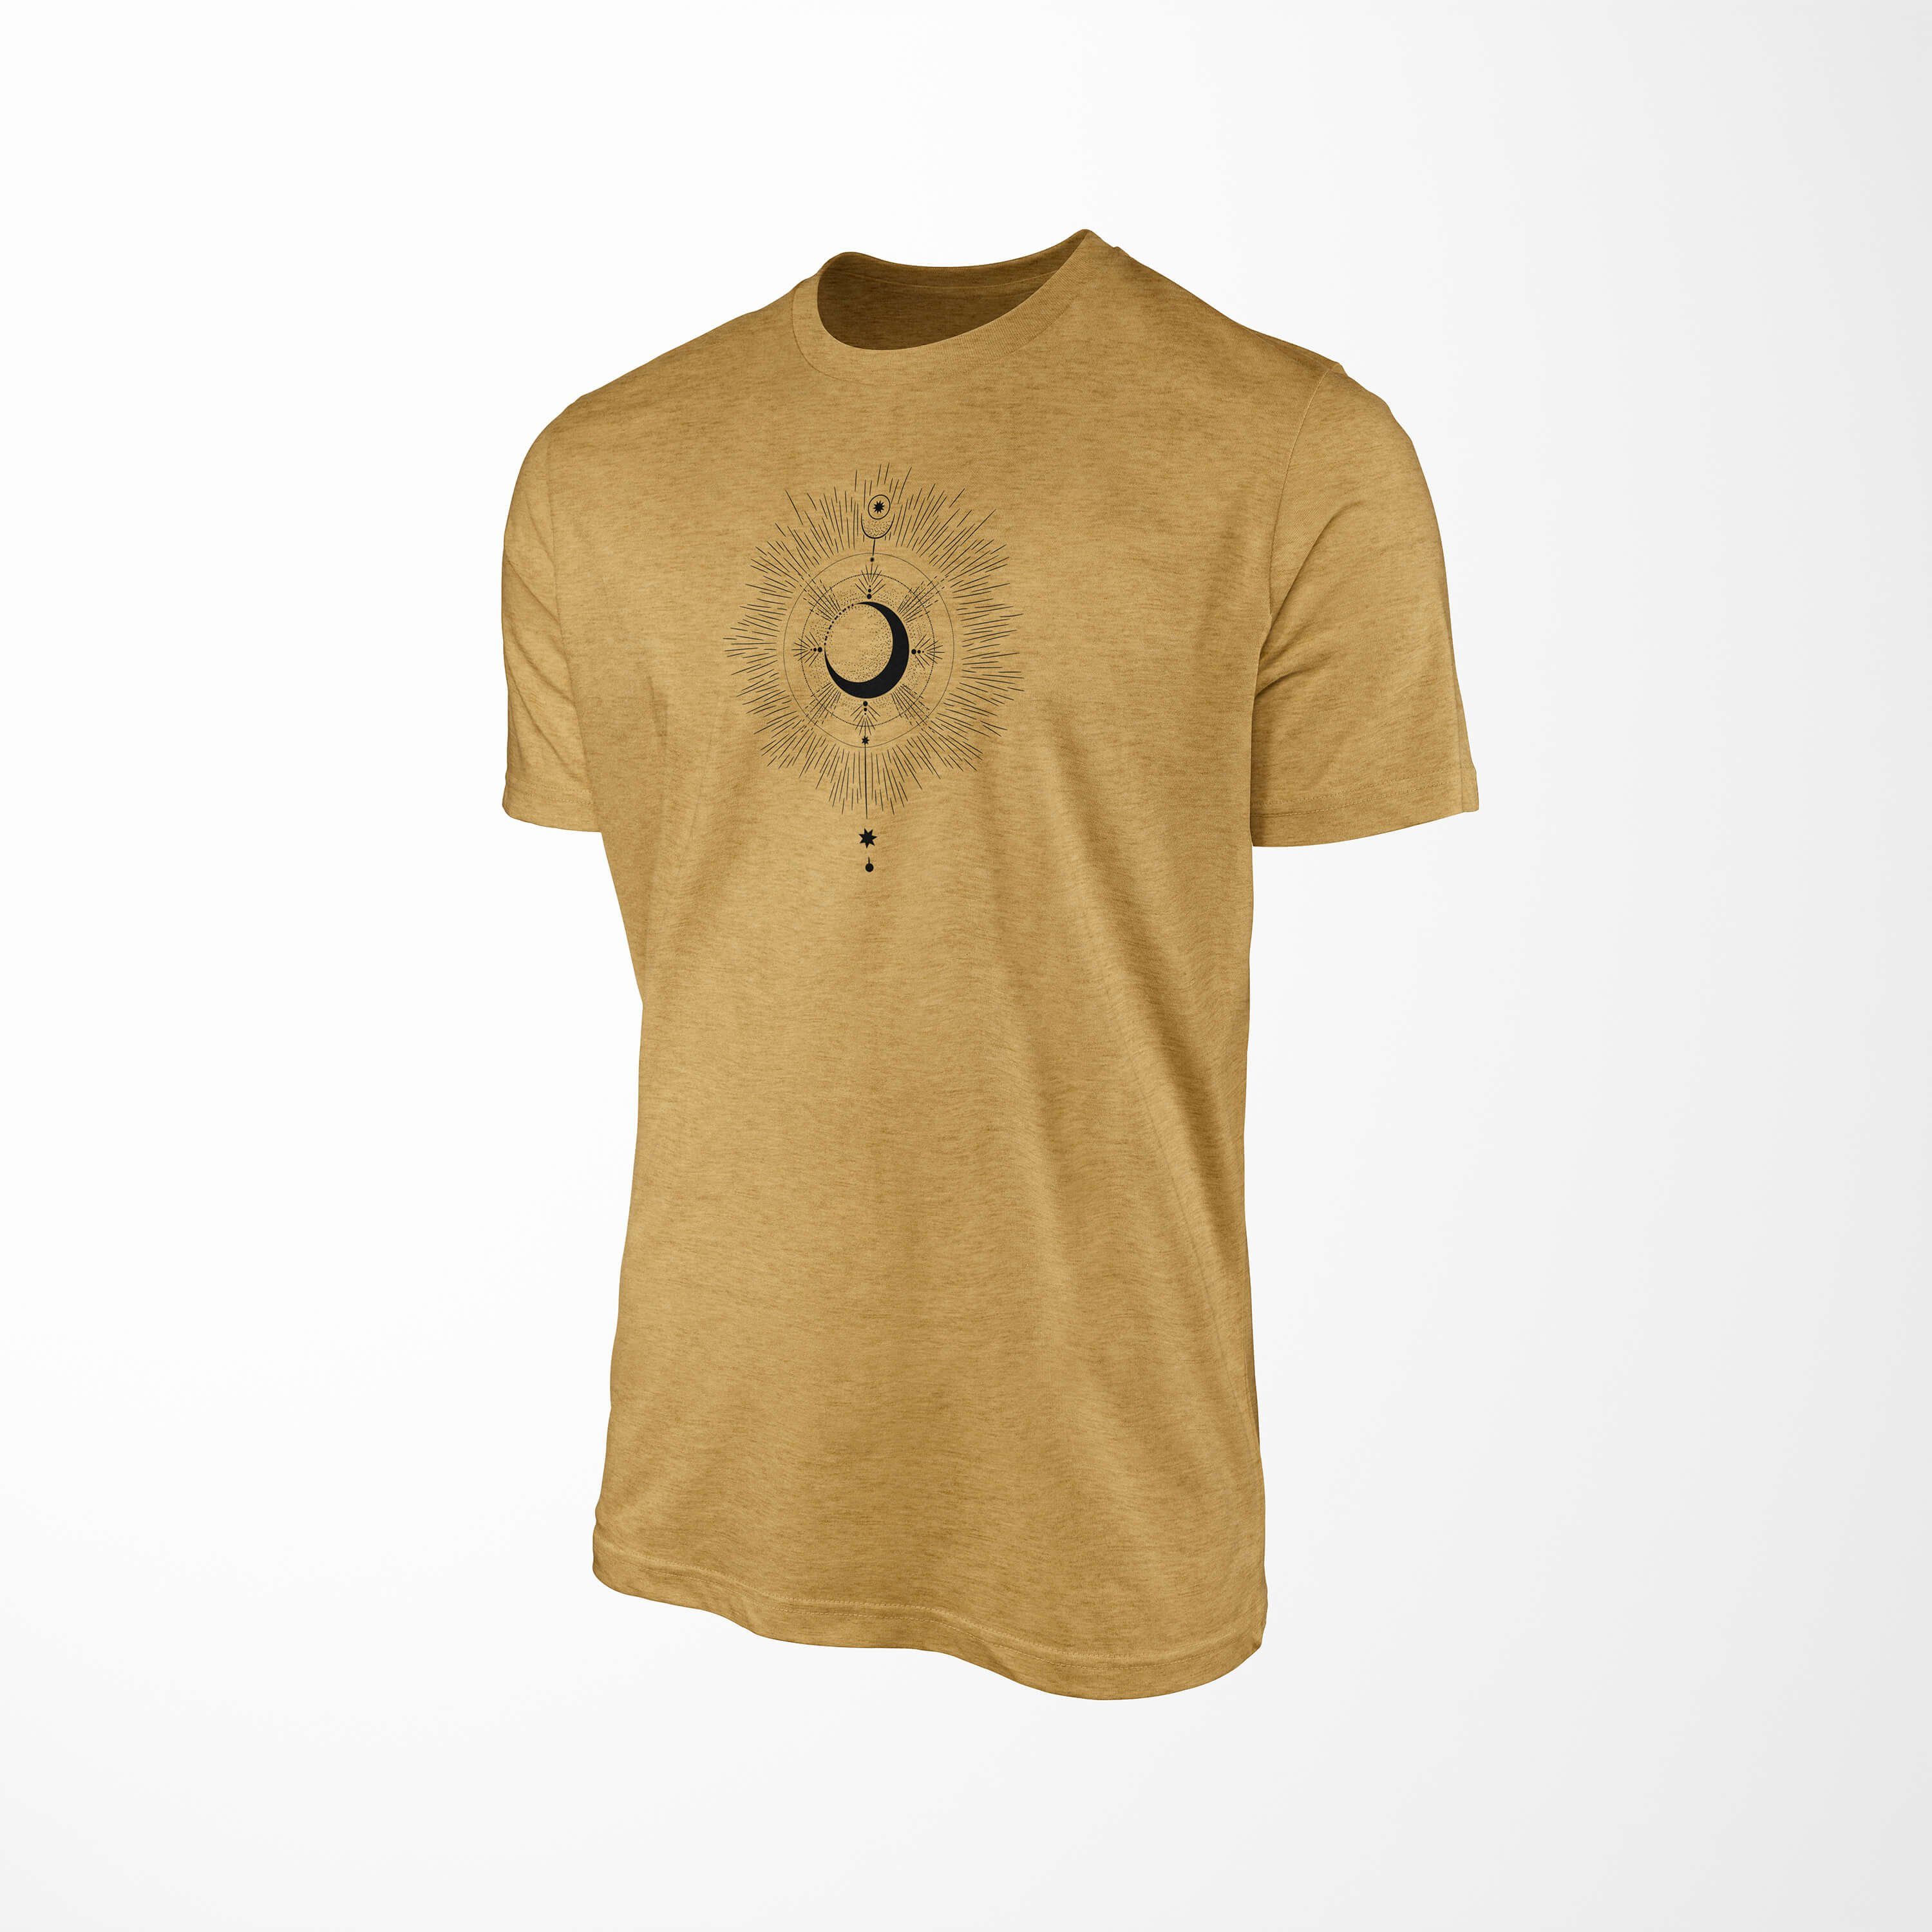 T-Shirt Alchemy Struktur T-Shirt Premium Sinus Antique Art No.0067 Gold angenehmer feine Tragekomfort Serie Symbole